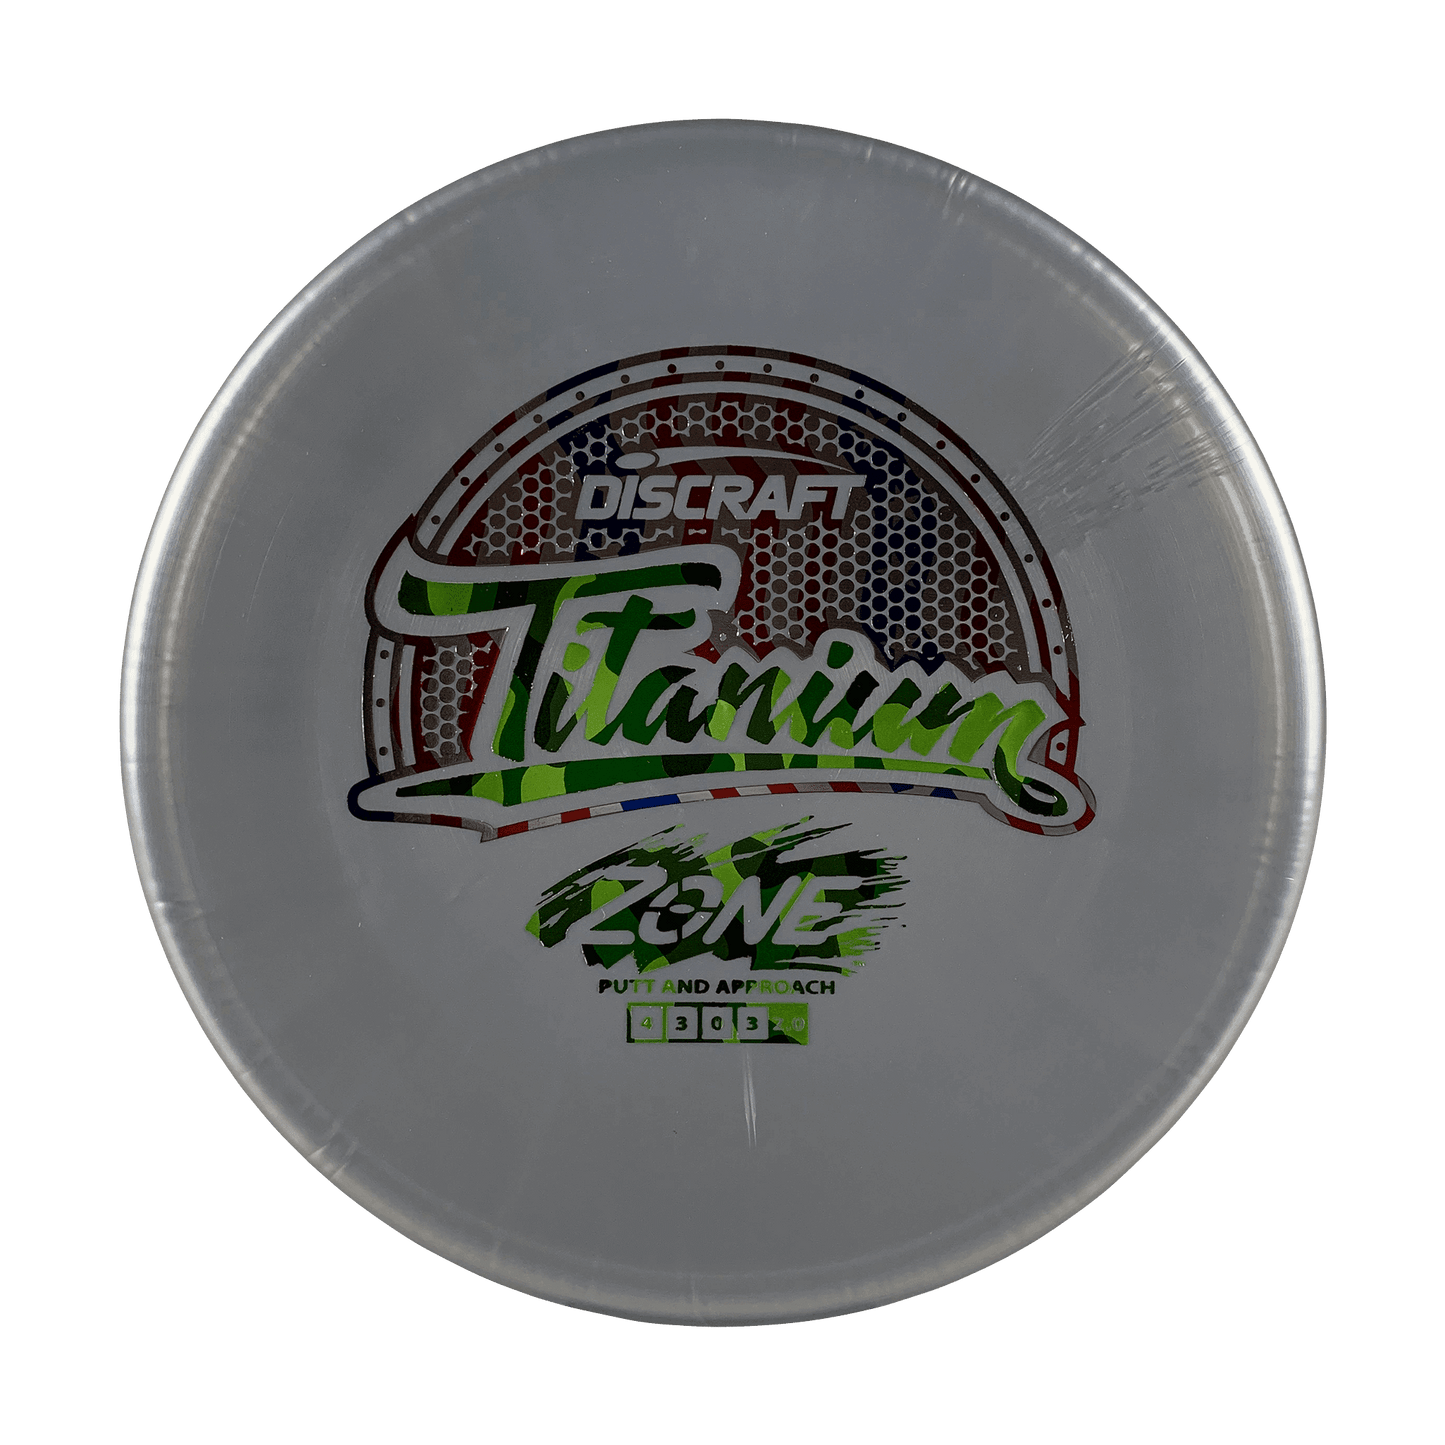 Titanium Zone Disc Discraft grey 173 